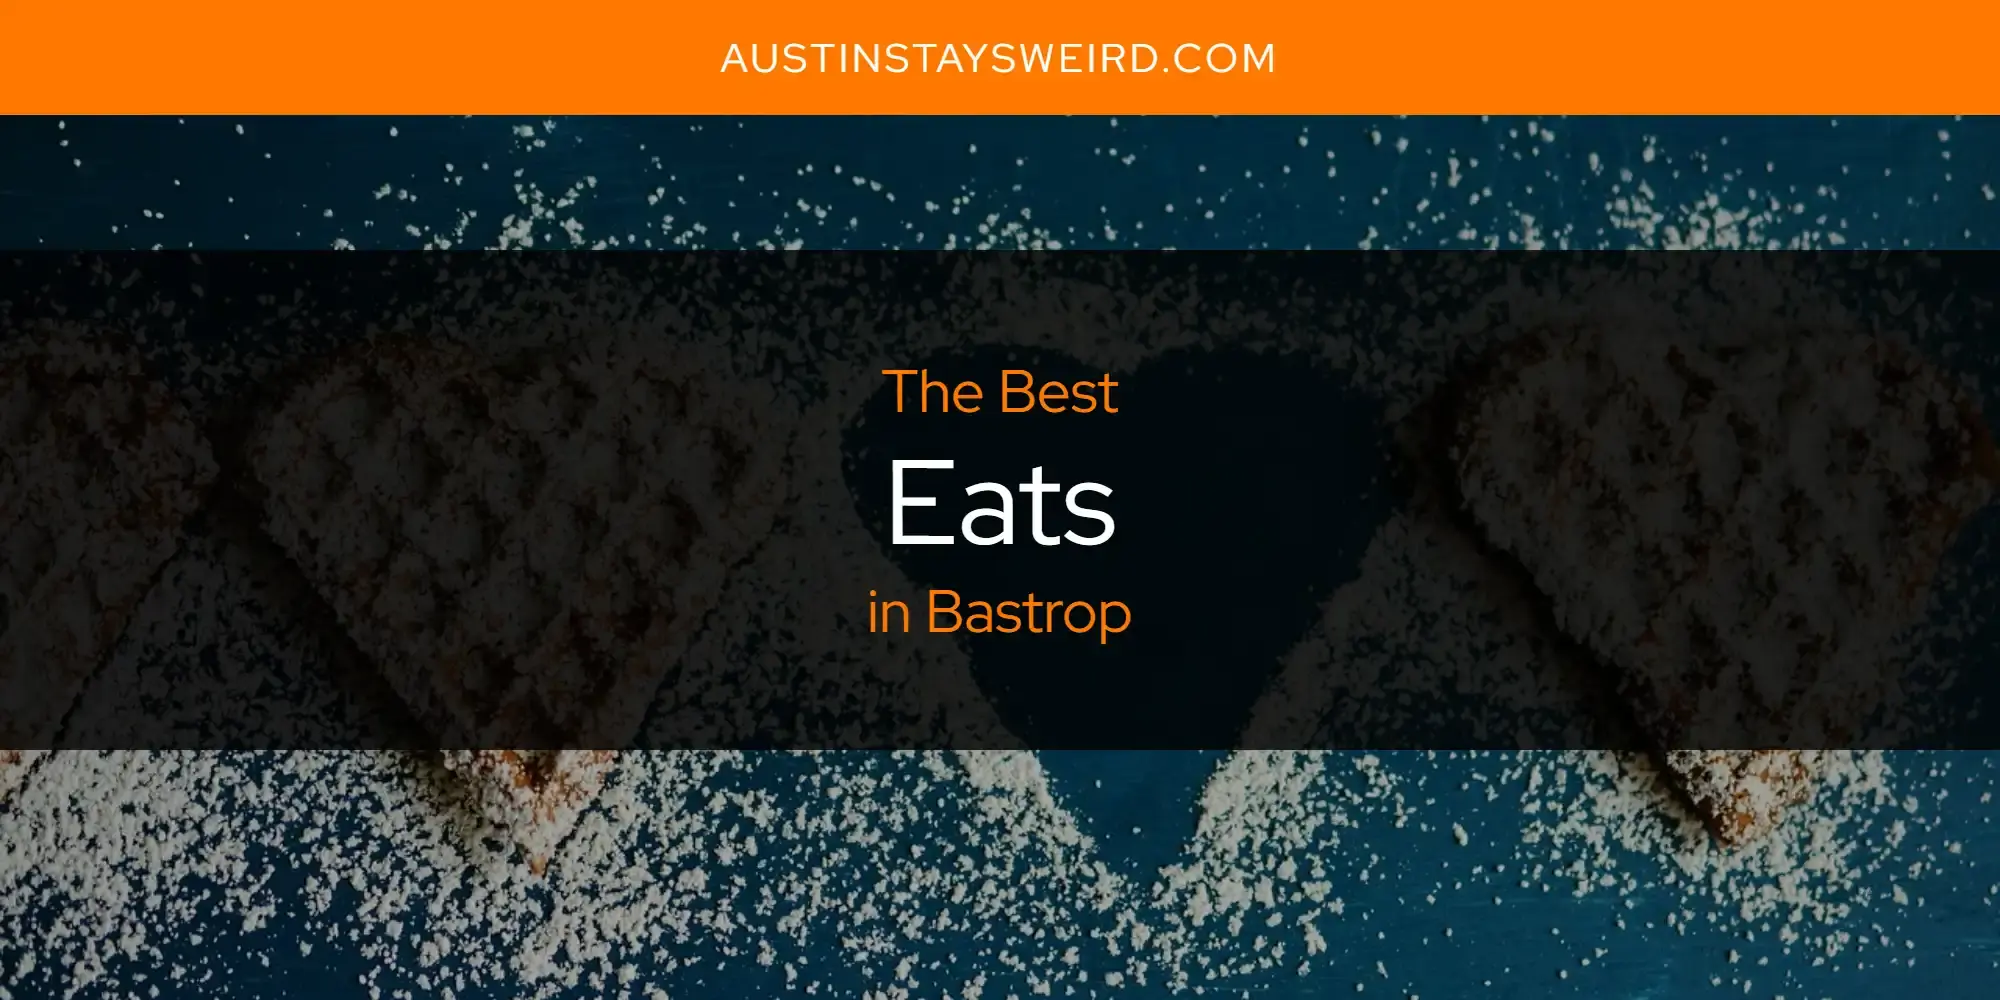 Best Eats in Bastrop? Here's the Top 8